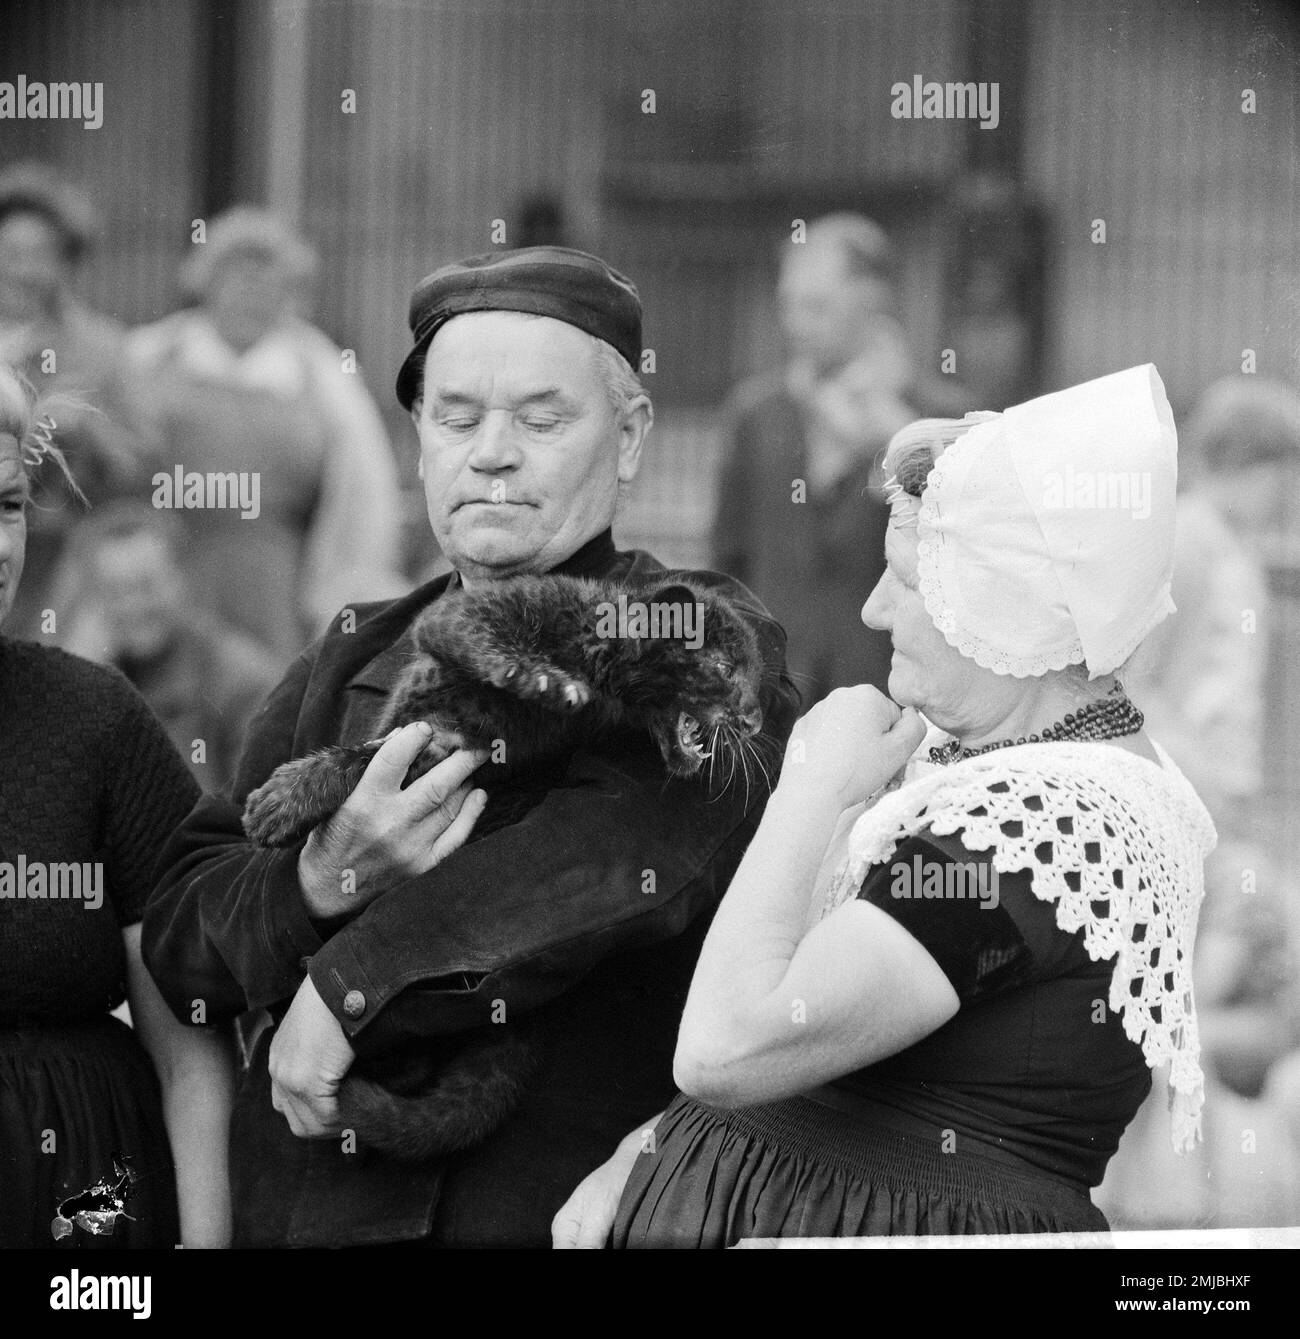 Niederländische Geschichte: Ein Westkapelle-Paar in Artis im Zwarte Panter, Ein Mann mit einem schwarzen Panther; Datum: 30. Juli 1962 Stockfoto